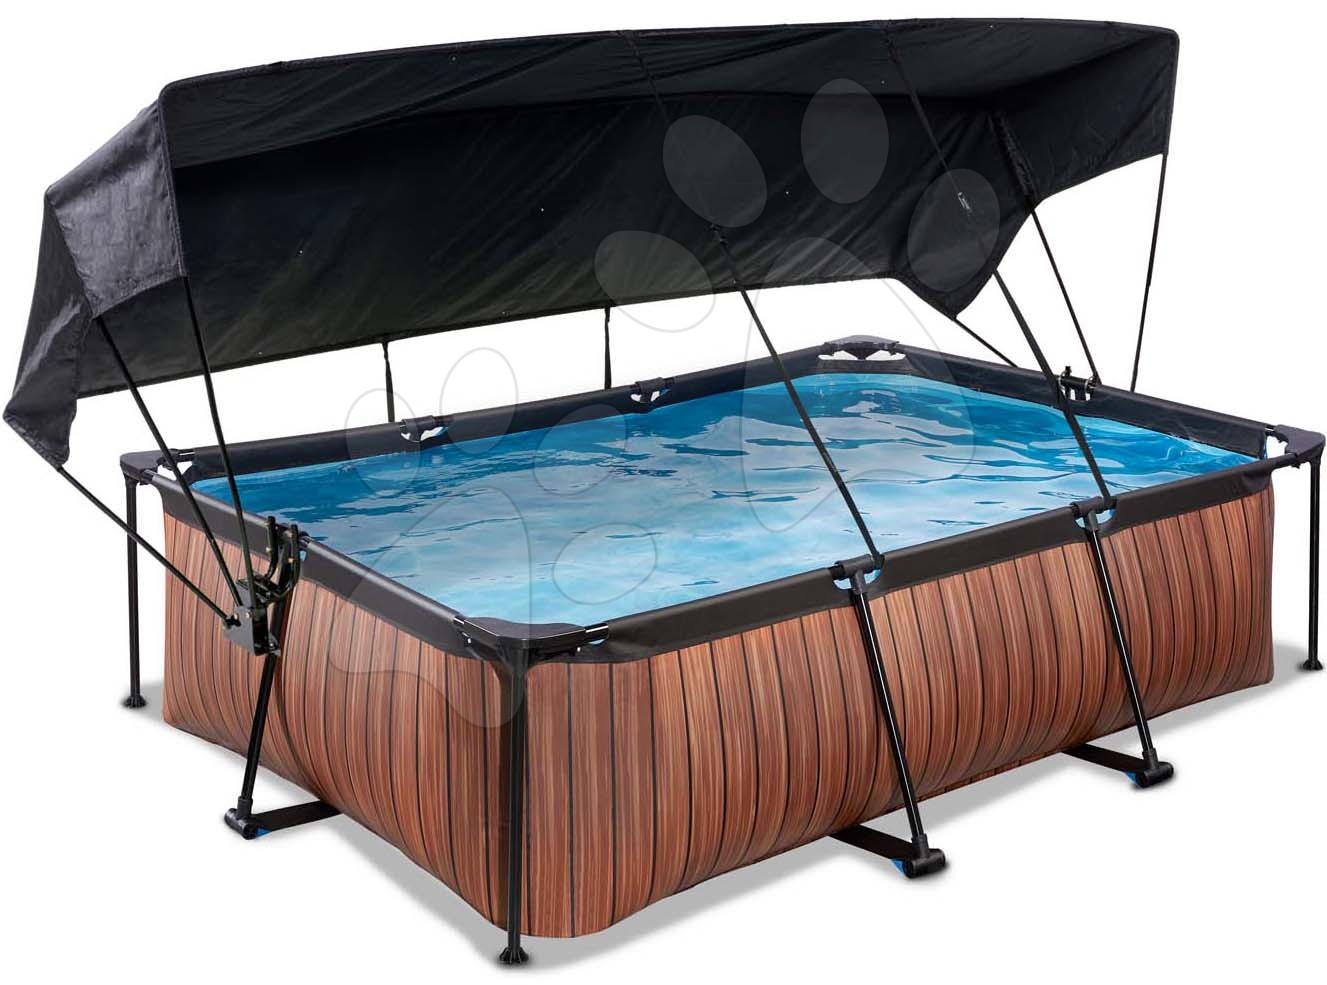 Bazén so strieškou a filtráciou Wood pool Exit Toys oceľová konštrukcia 220*150*65 cm hnedý od 6 rokov